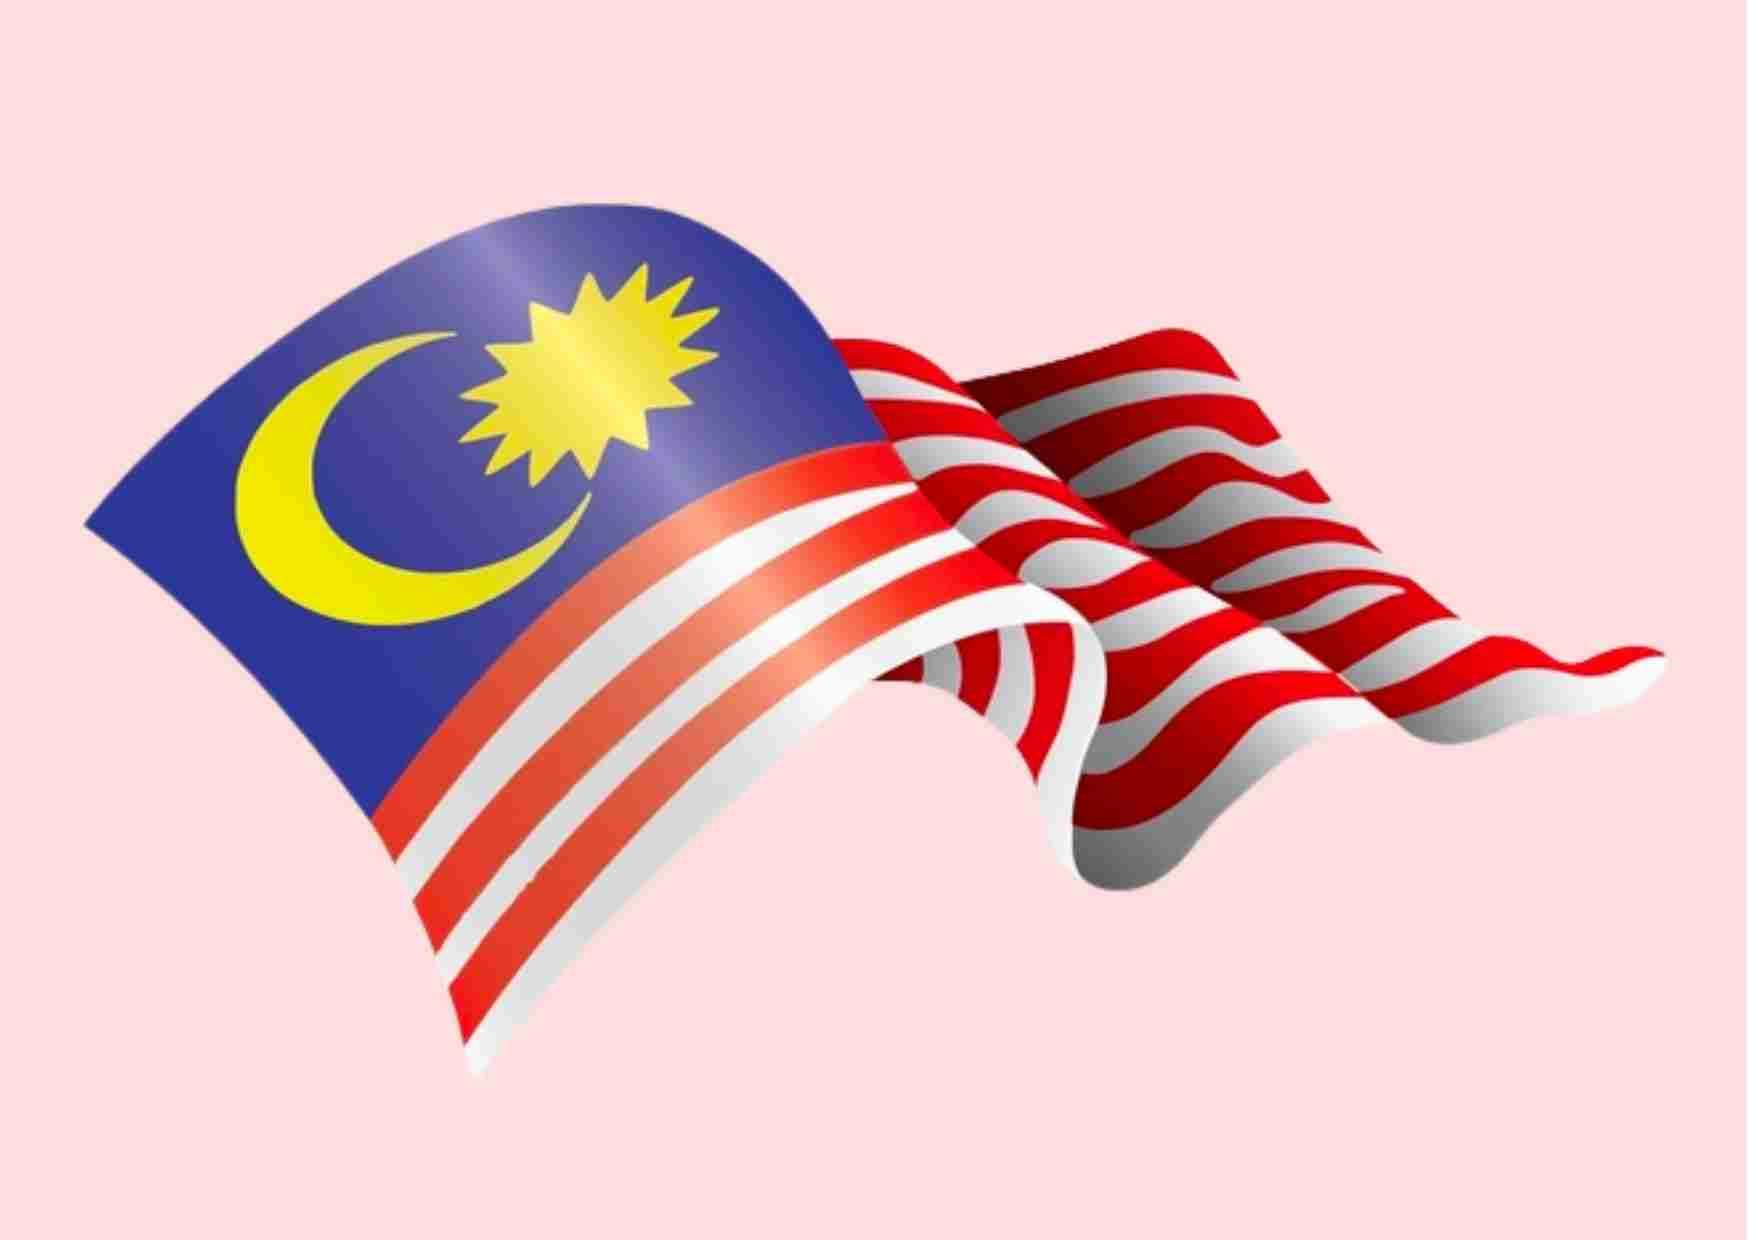 منحة حكومة ماليزيا للحصول على الماجستير أو الدكتوراه في ماليزيا 2022 - 2023 (ممولة بالكامل)